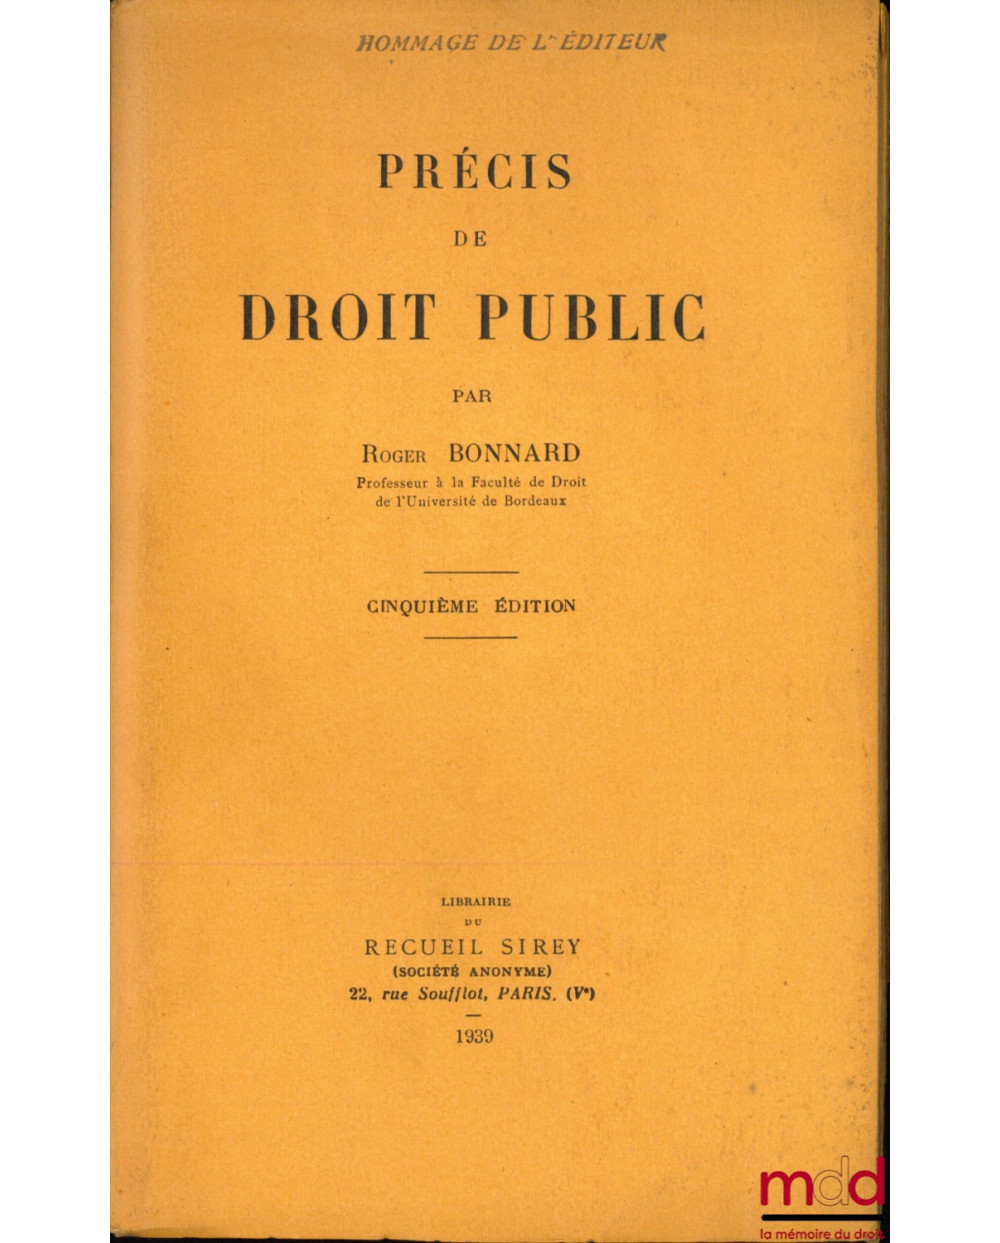 PRÉCIS DE DROIT PUBLIC, 5ème éd.